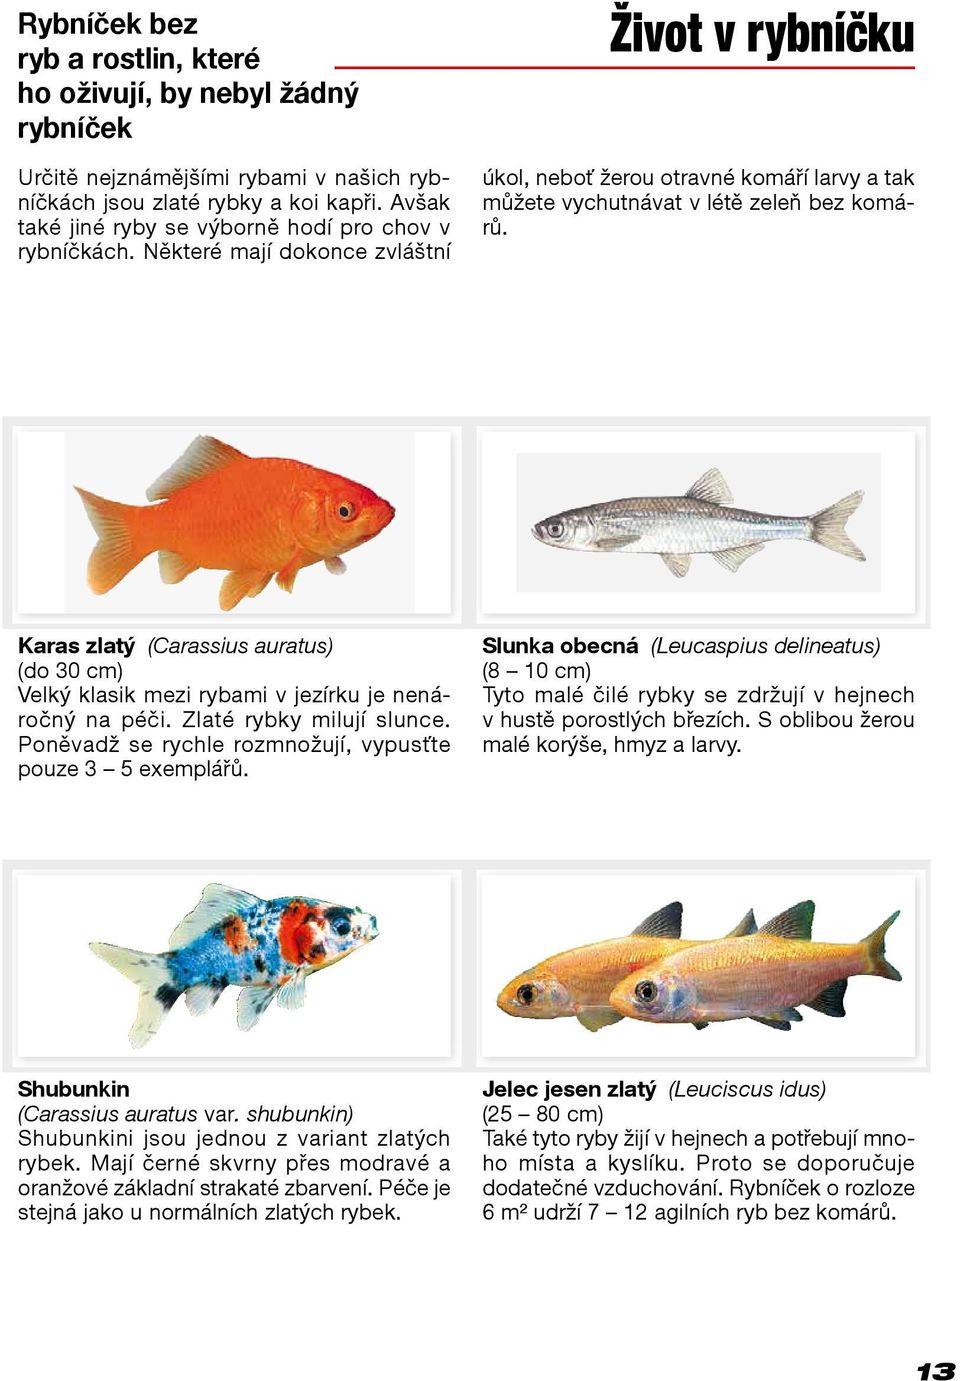 Karas zlatý (Carassius auratus) (do 30 cm) Velký klasik mezi rybami v jezírku je nenáročný na péči. Zlaté rybky milují slunce. Poněvadž se rychle rozmnožují, vypusťte pouze 3 5 exemplářů.